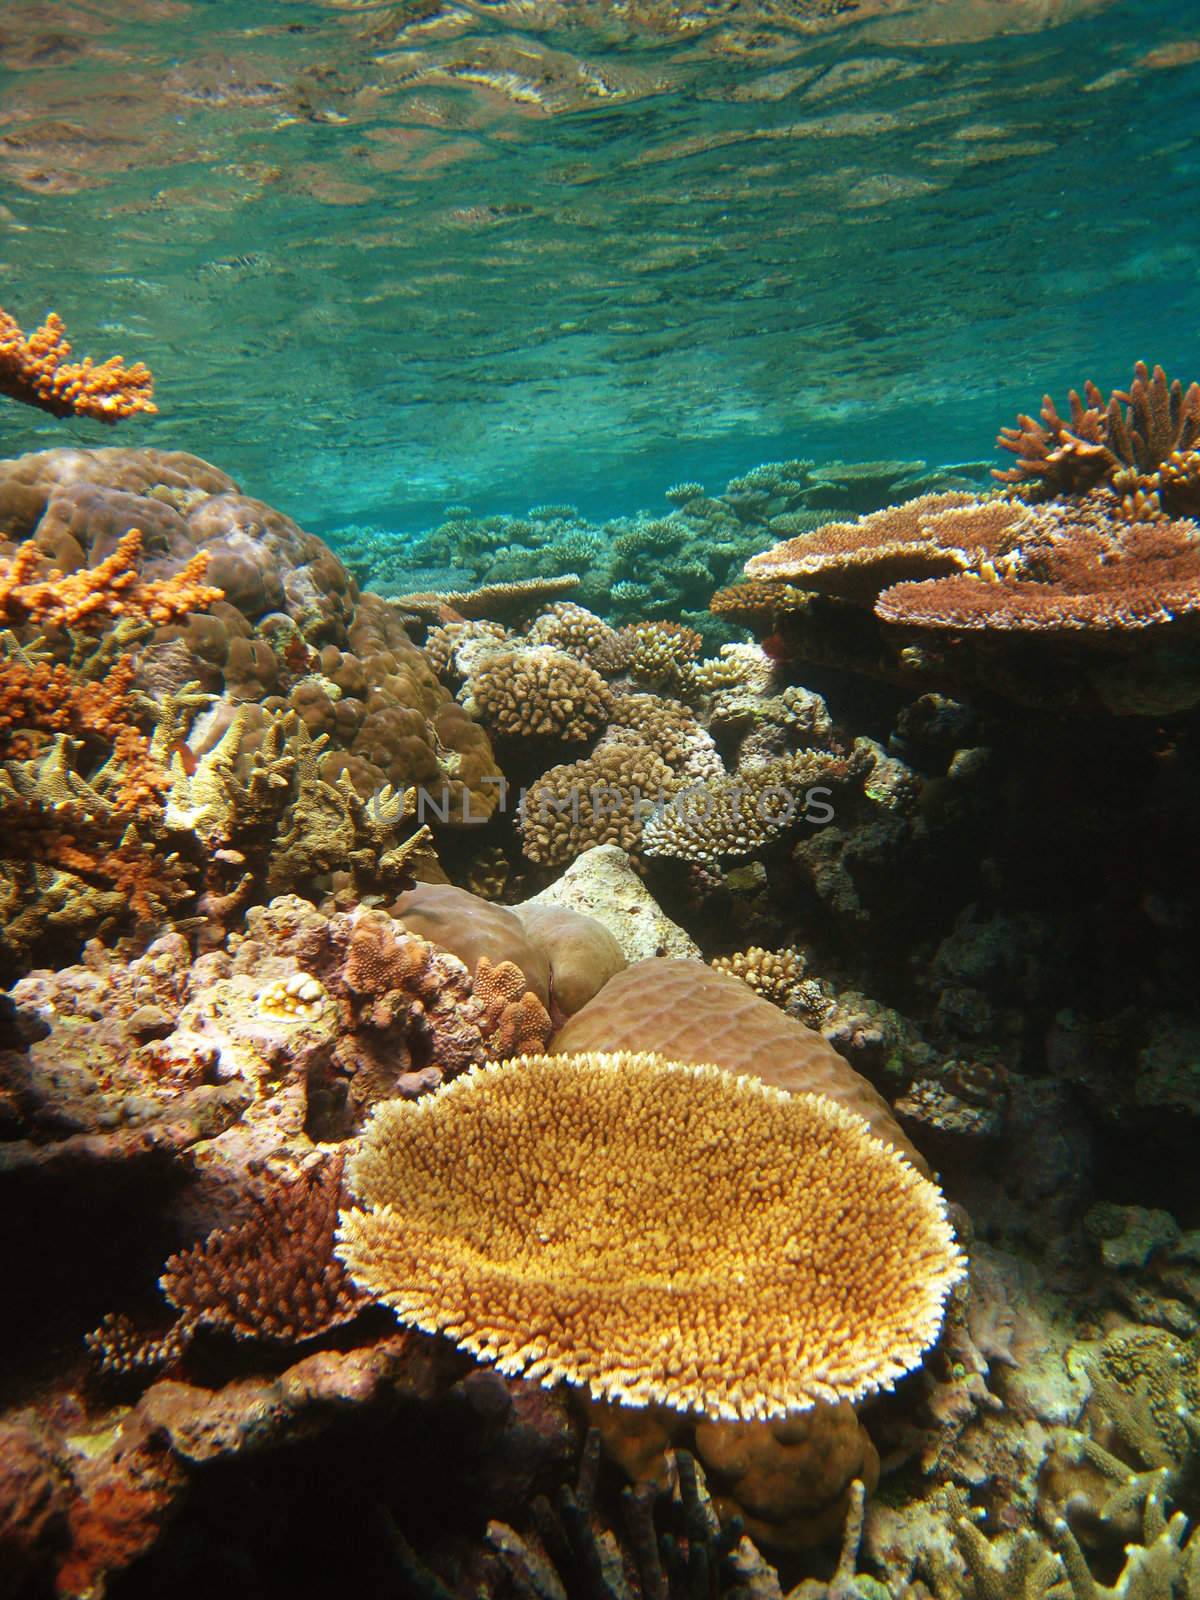 Underwater Scene of Great Barrier Reef in Queensland, Australia